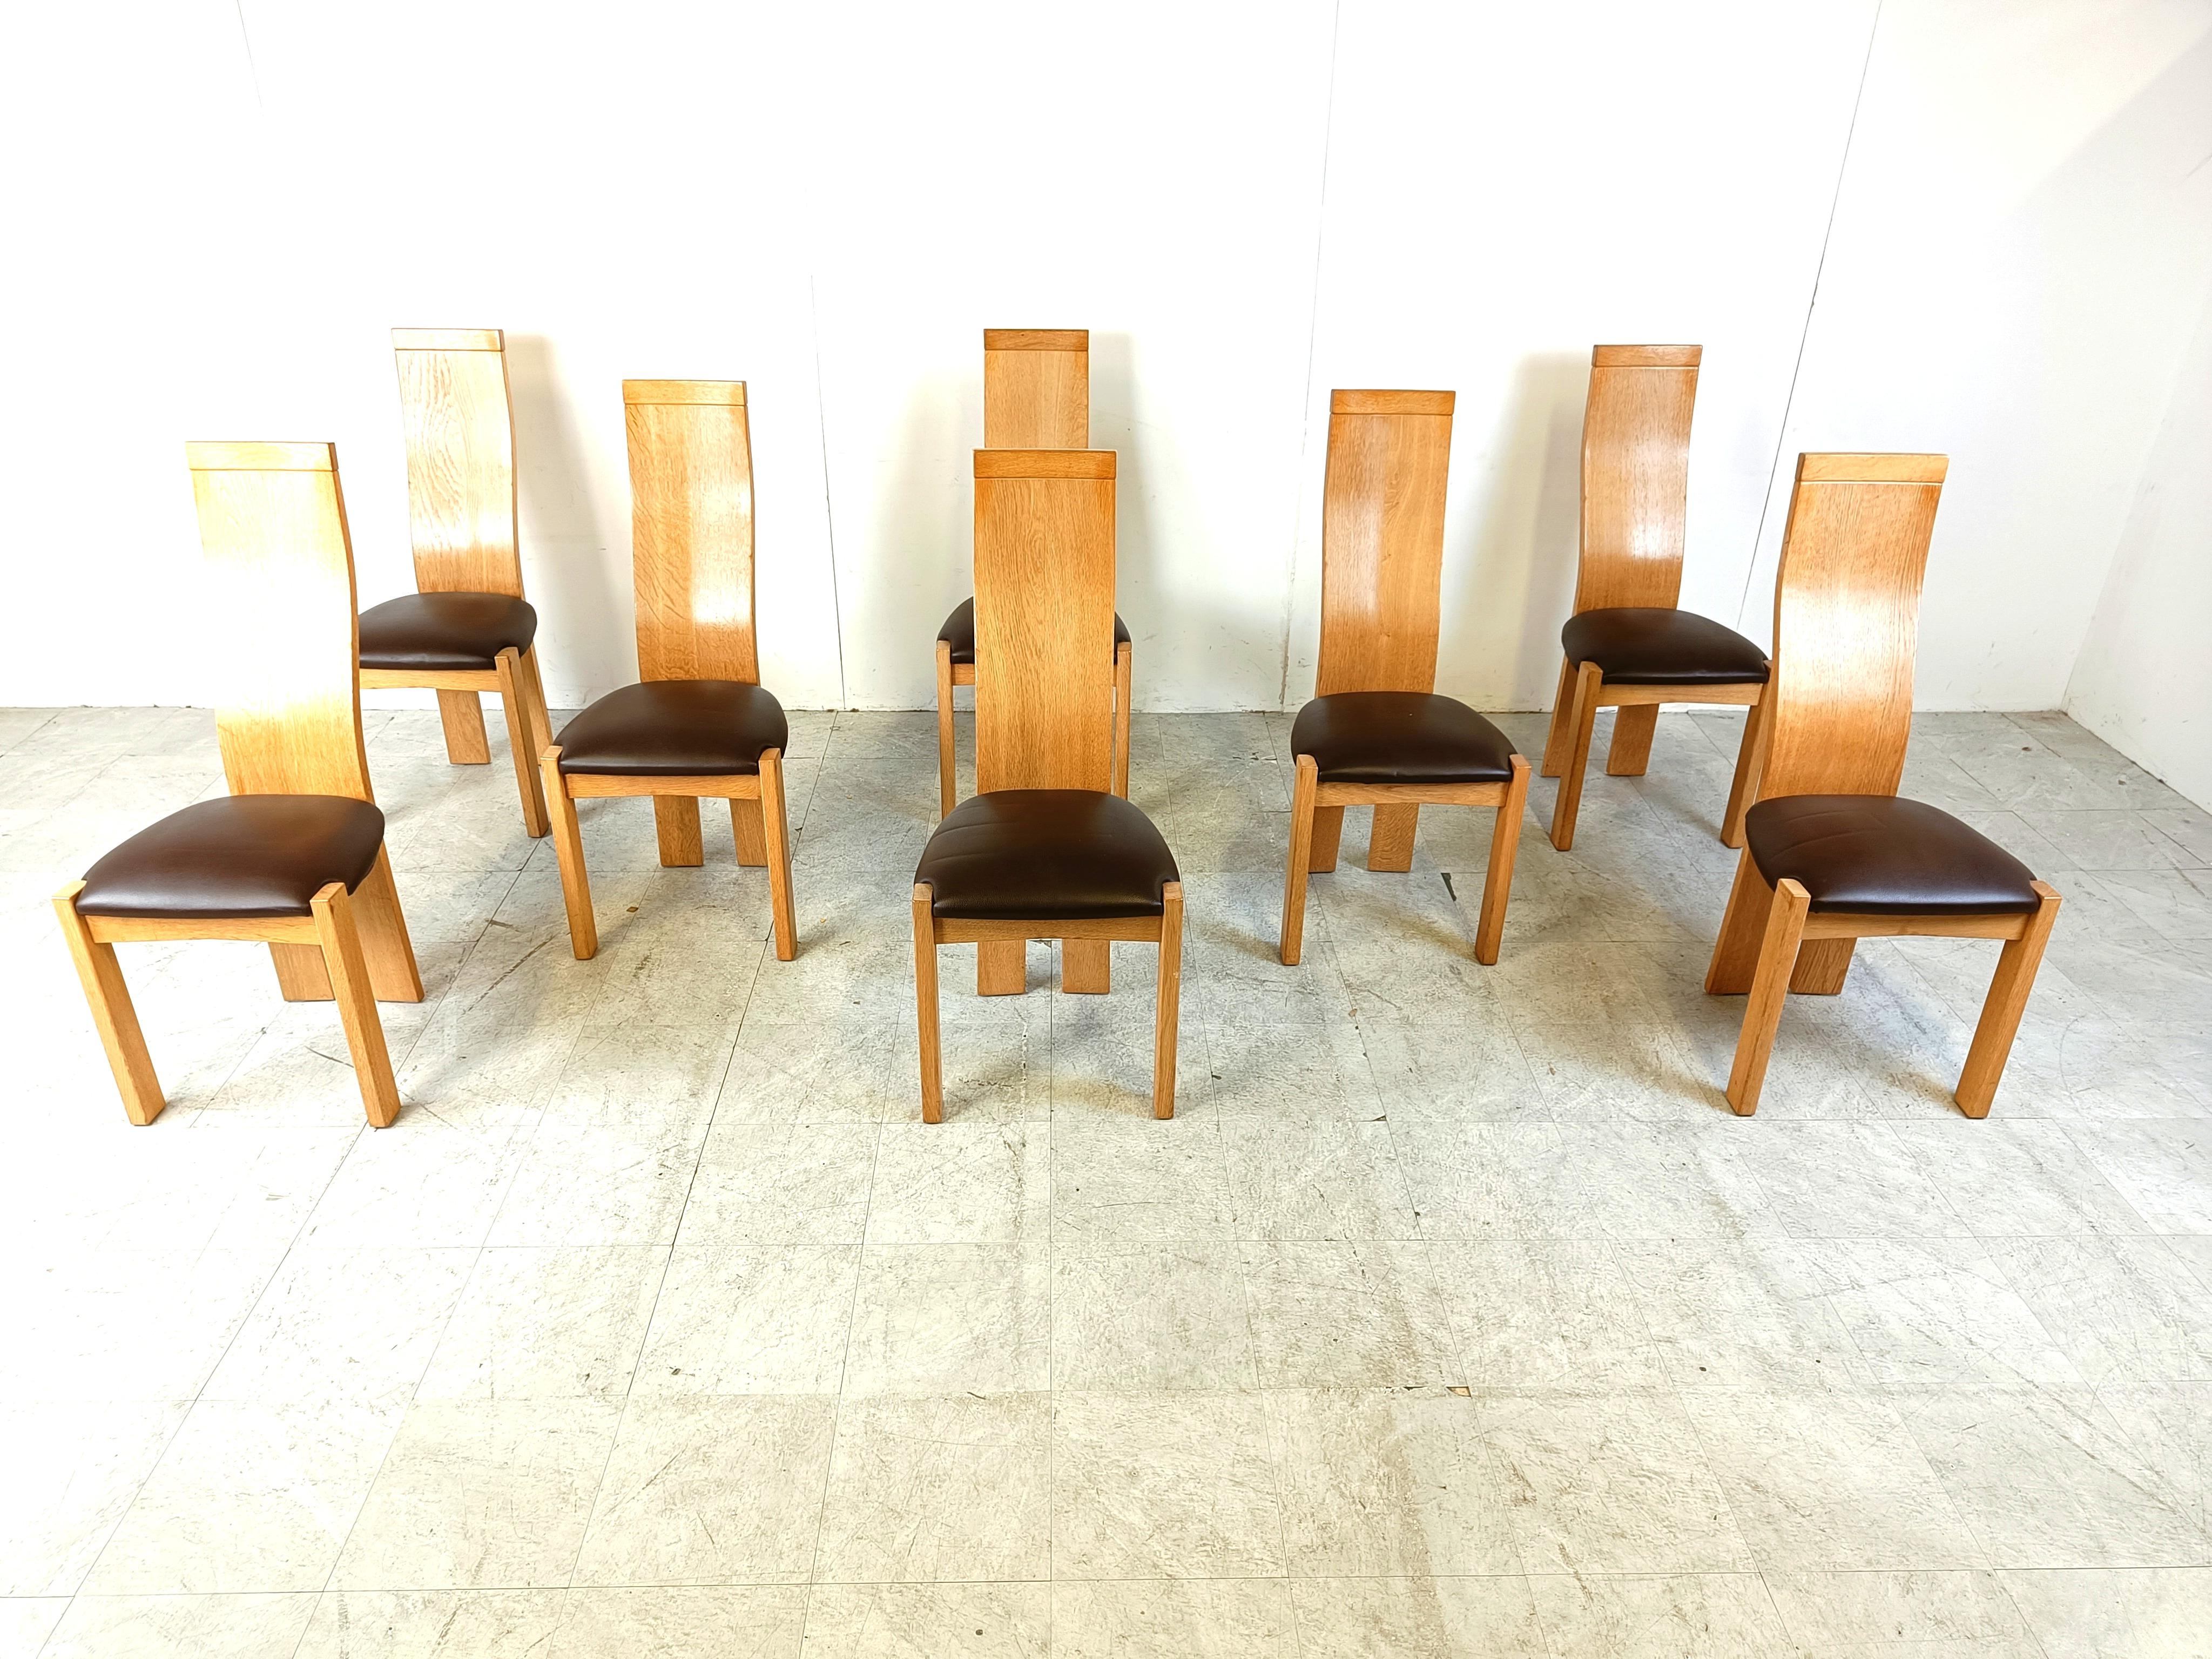 Chaises de salle à manger élégantes et sculpturales à haut dossier de Vanden Berghe Pauvers.

Magnifique design intemporel avec des sièges en cuir marron.

Les chaises sont globalement en bon état.

Années 1980 - Belgique

Dimensions :
Hauteur : 108